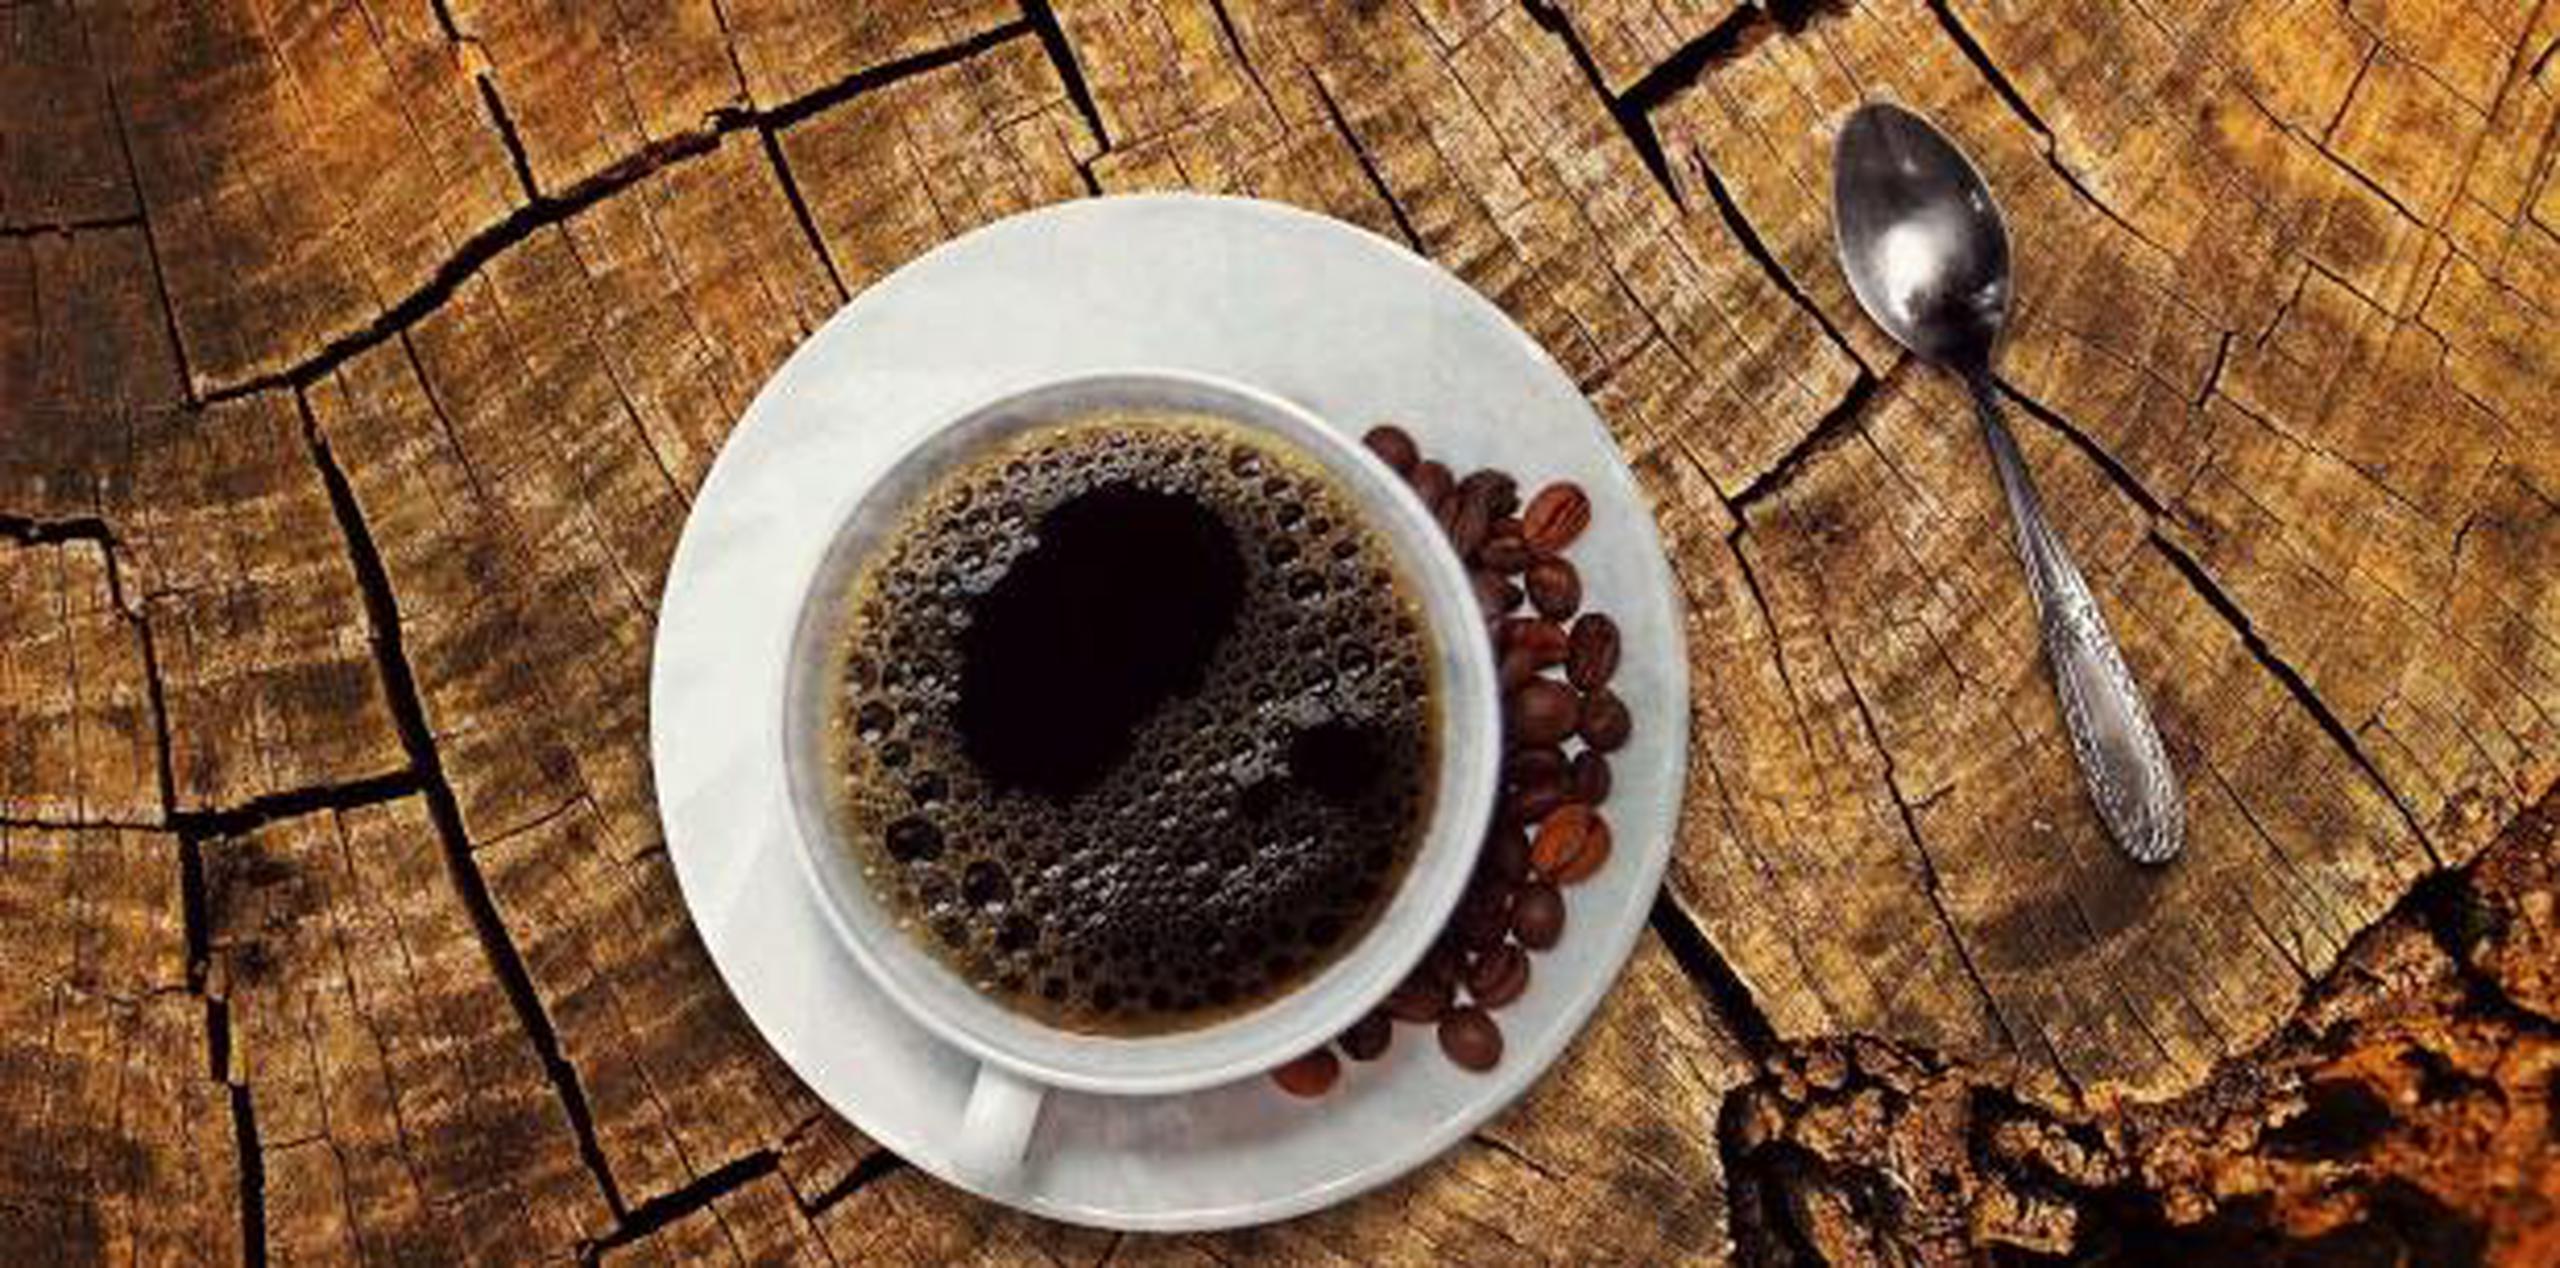 Las compañías cafeteras no negaron ante el tribunal la presencia de acrilamida, pero defendieron que está presente en niveles bajos que no representan un "riesgo significativo" para la salud. (Pixabay)